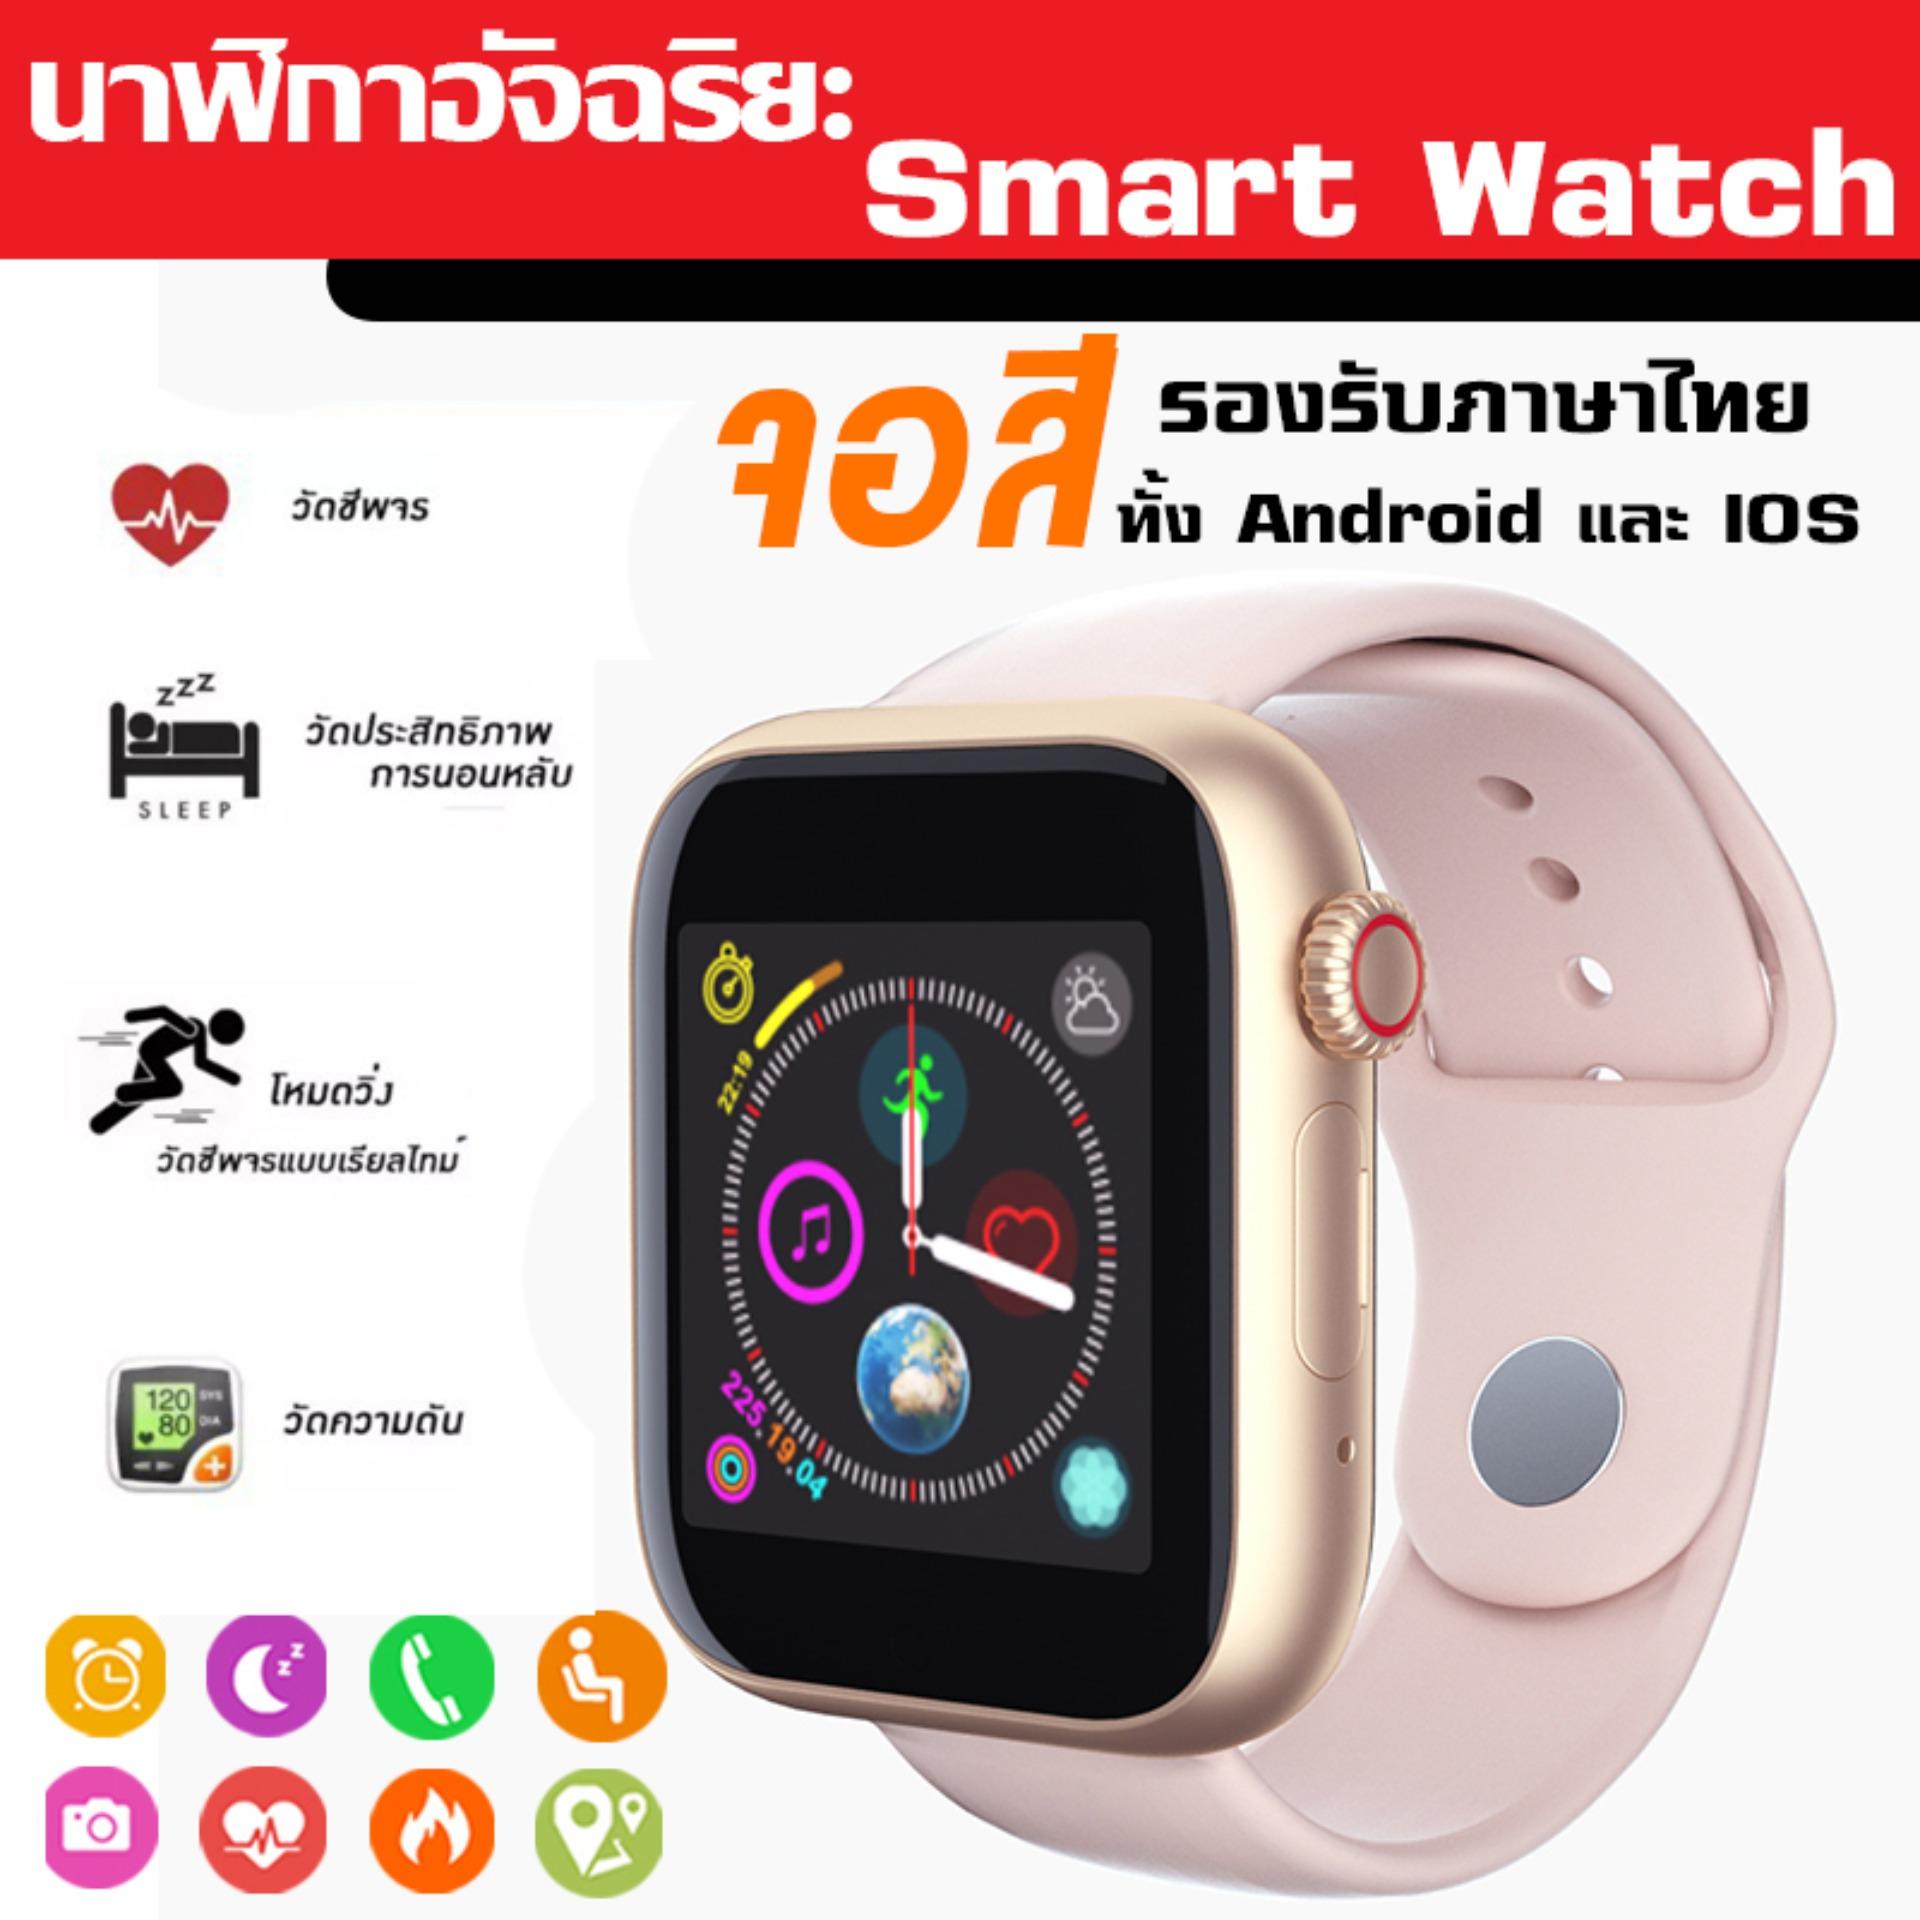 ใหม่2020 Smart Watch รุ่น Z6 สมาร์ทวอทช์ สายรัดข้อมือเพื่อสุขภาพ ใส่ซิมได้ ฟังค์ชั่นเยอะ จับชีพจร นับก้าว เดิน วิ่ง วัดแคลอรี่